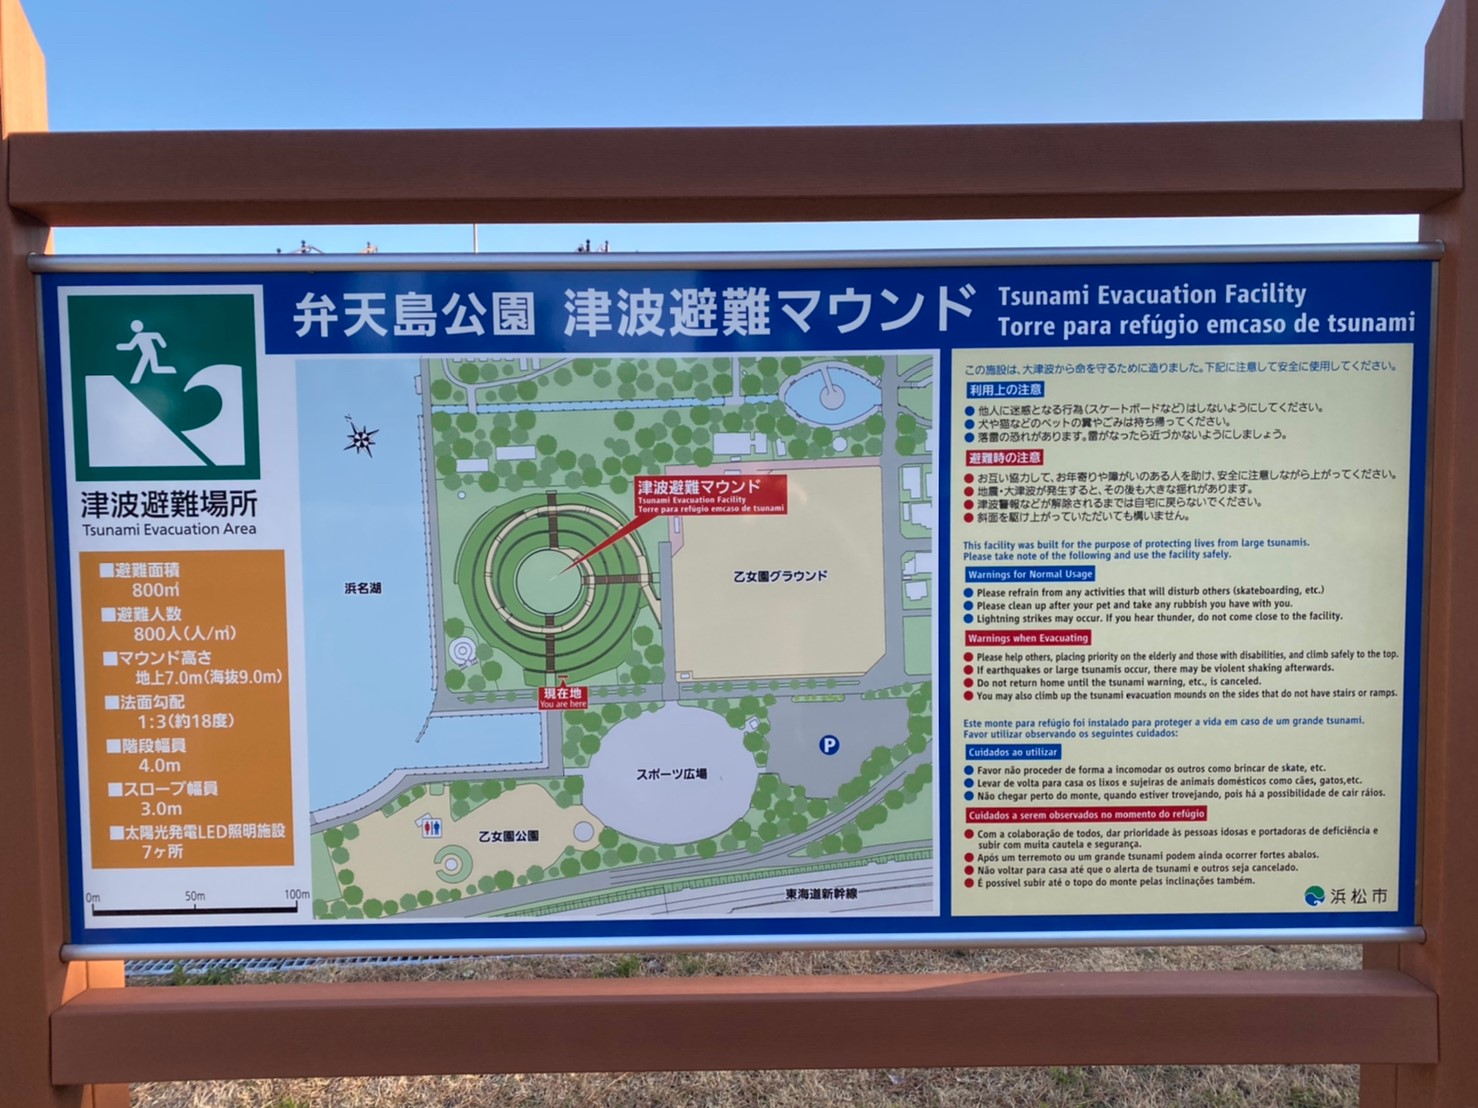 【浜名湖南部】『和田航路・浜名湖県立公園周辺』の釣り場ガイド